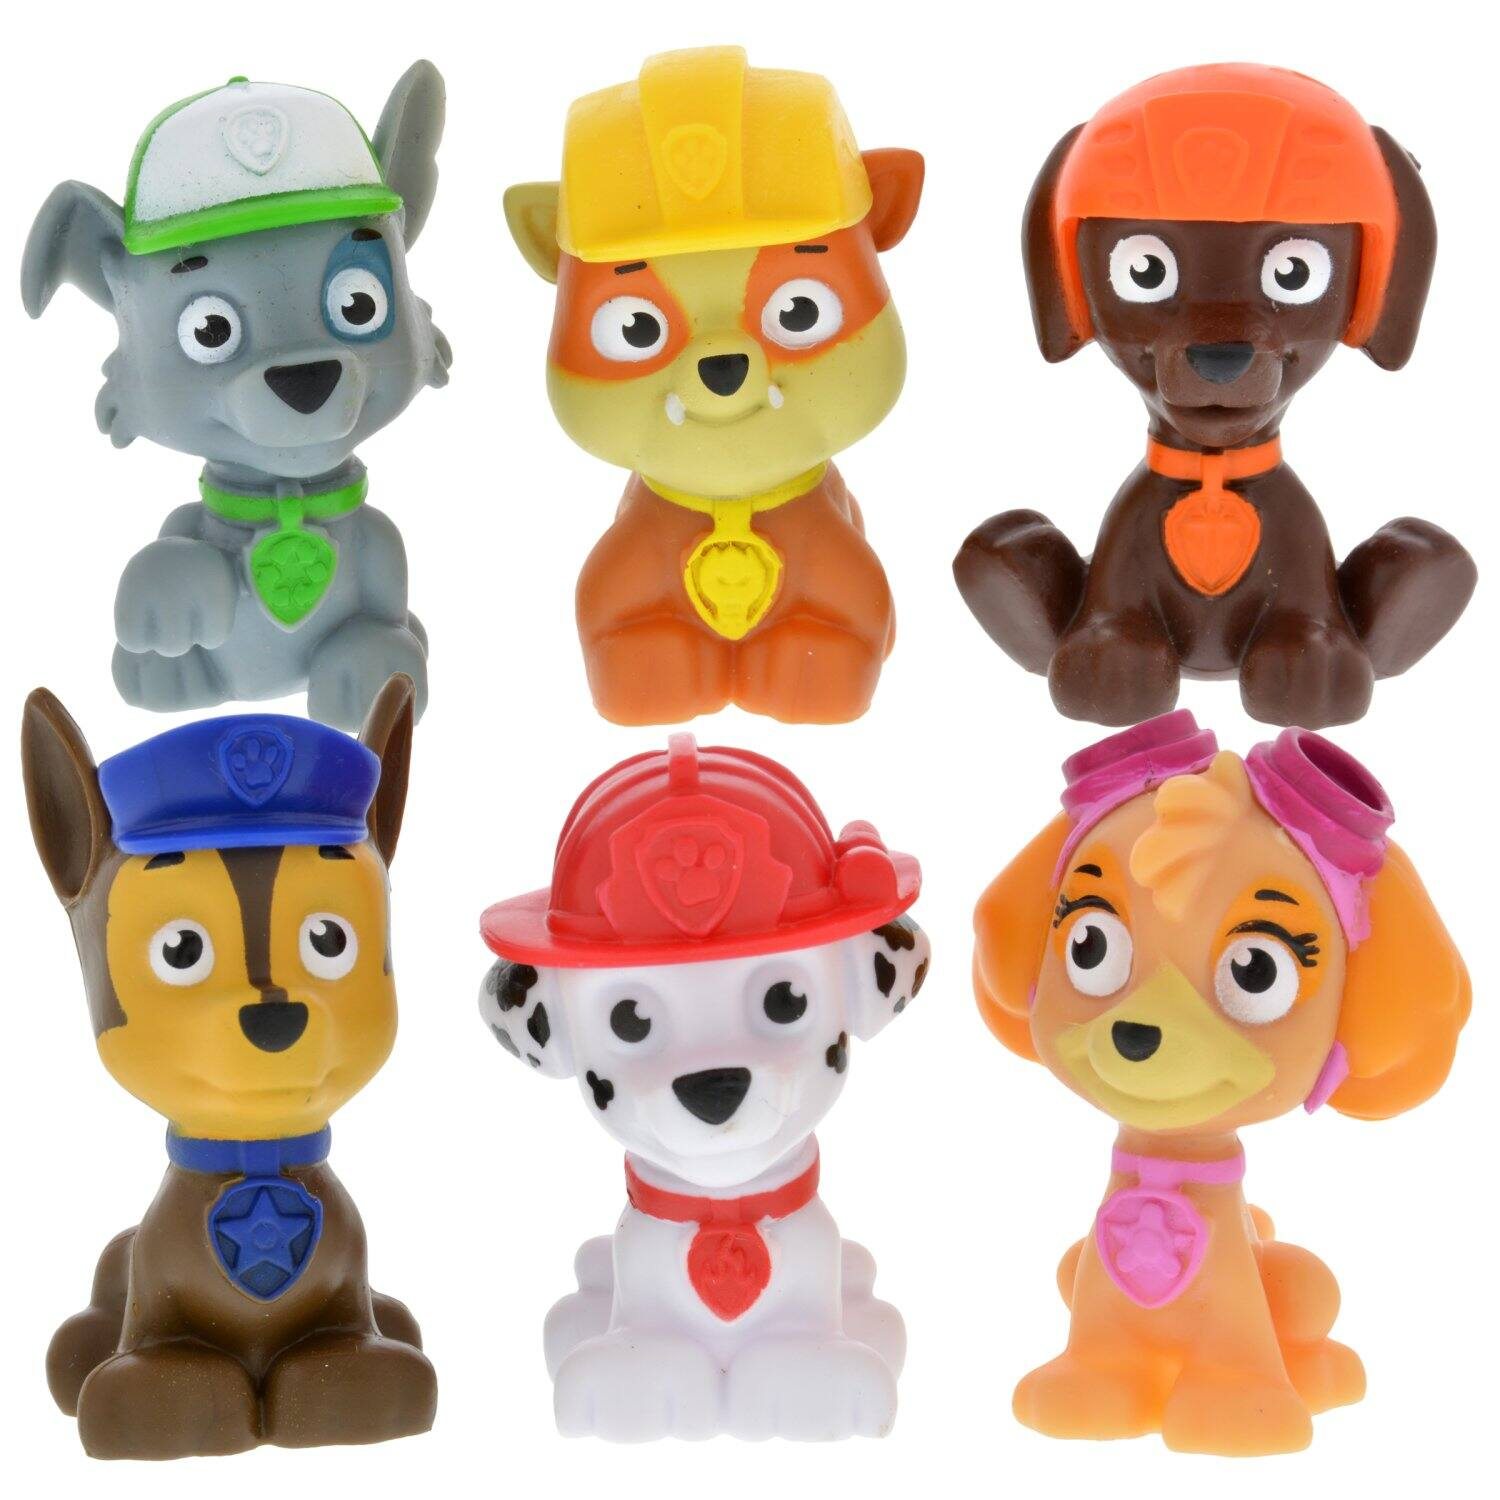 Nickelodeon Paw Patrol Plastic Figurines, 3 in.